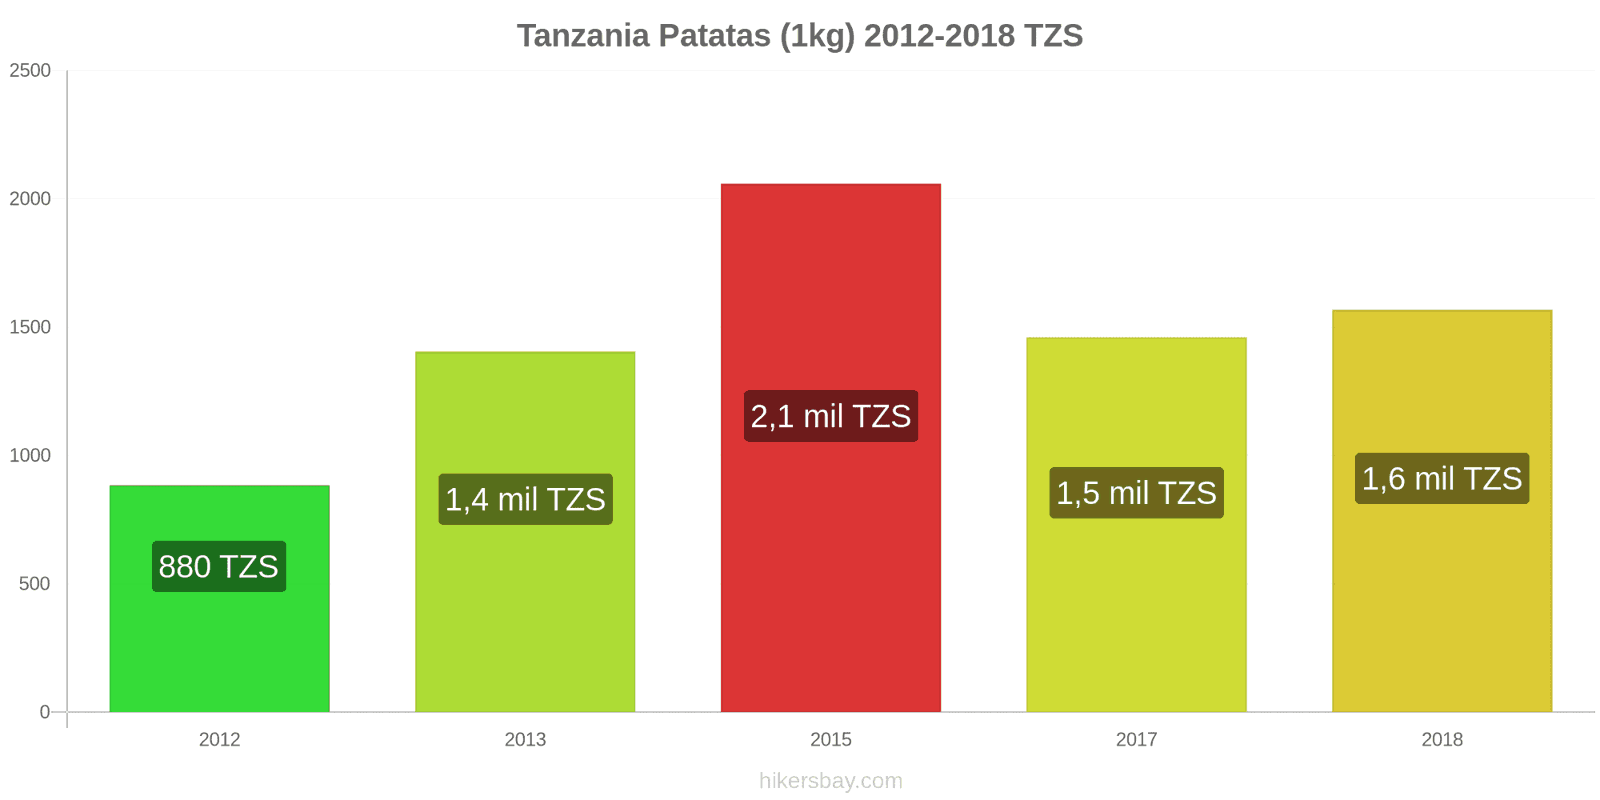 Tanzania cambios de precios Patatas (1kg) hikersbay.com